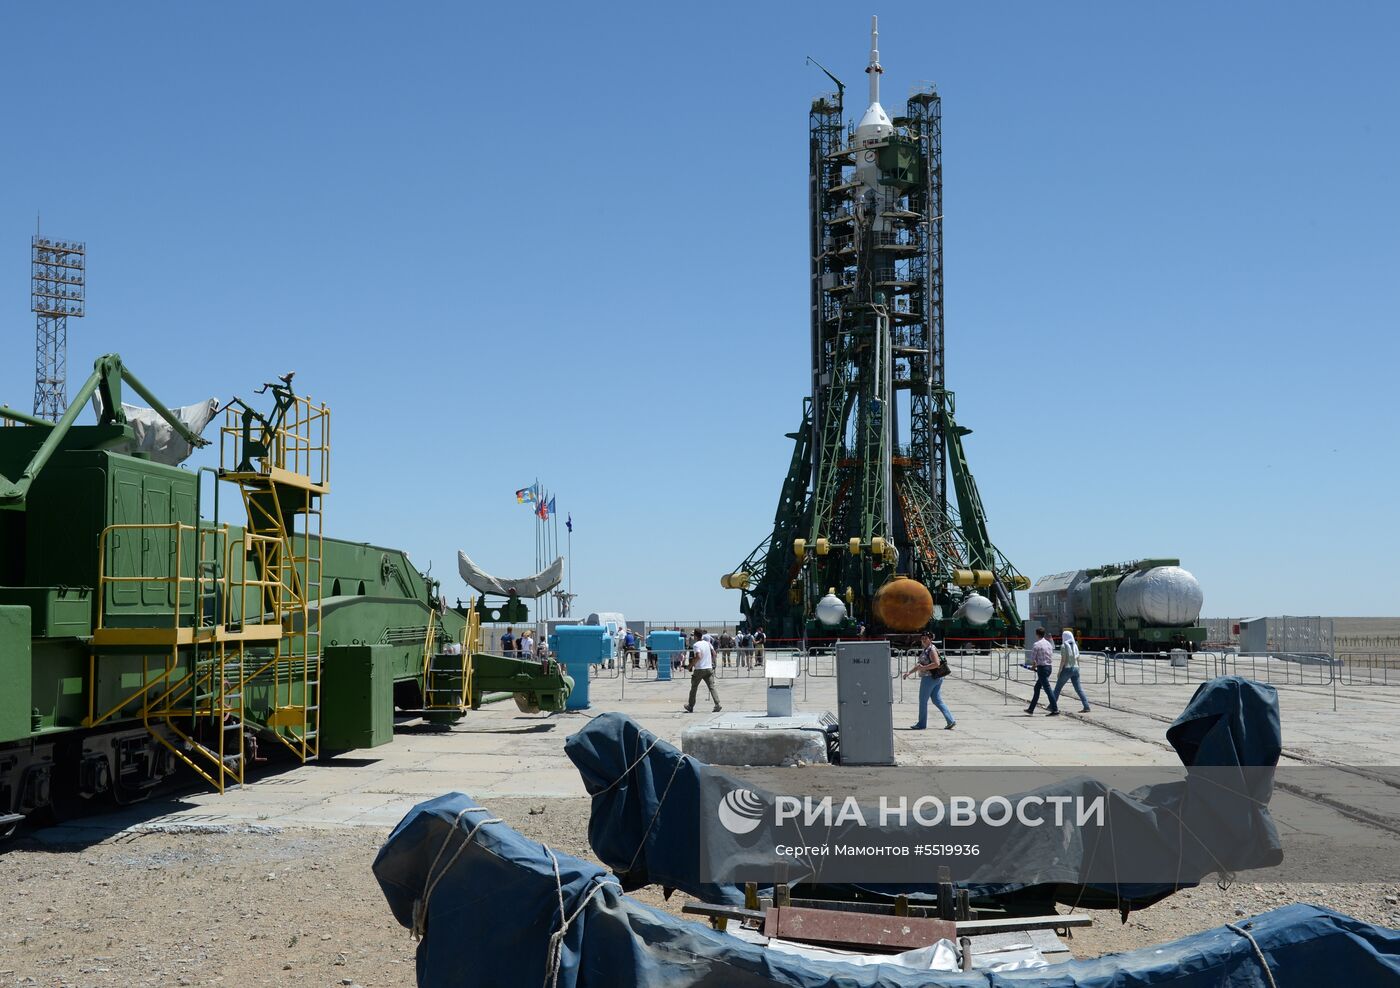 Освящение ракеты-носителя "Союз-ФГ" с ТПК "Союз МС-09" на космодроме Байконур 